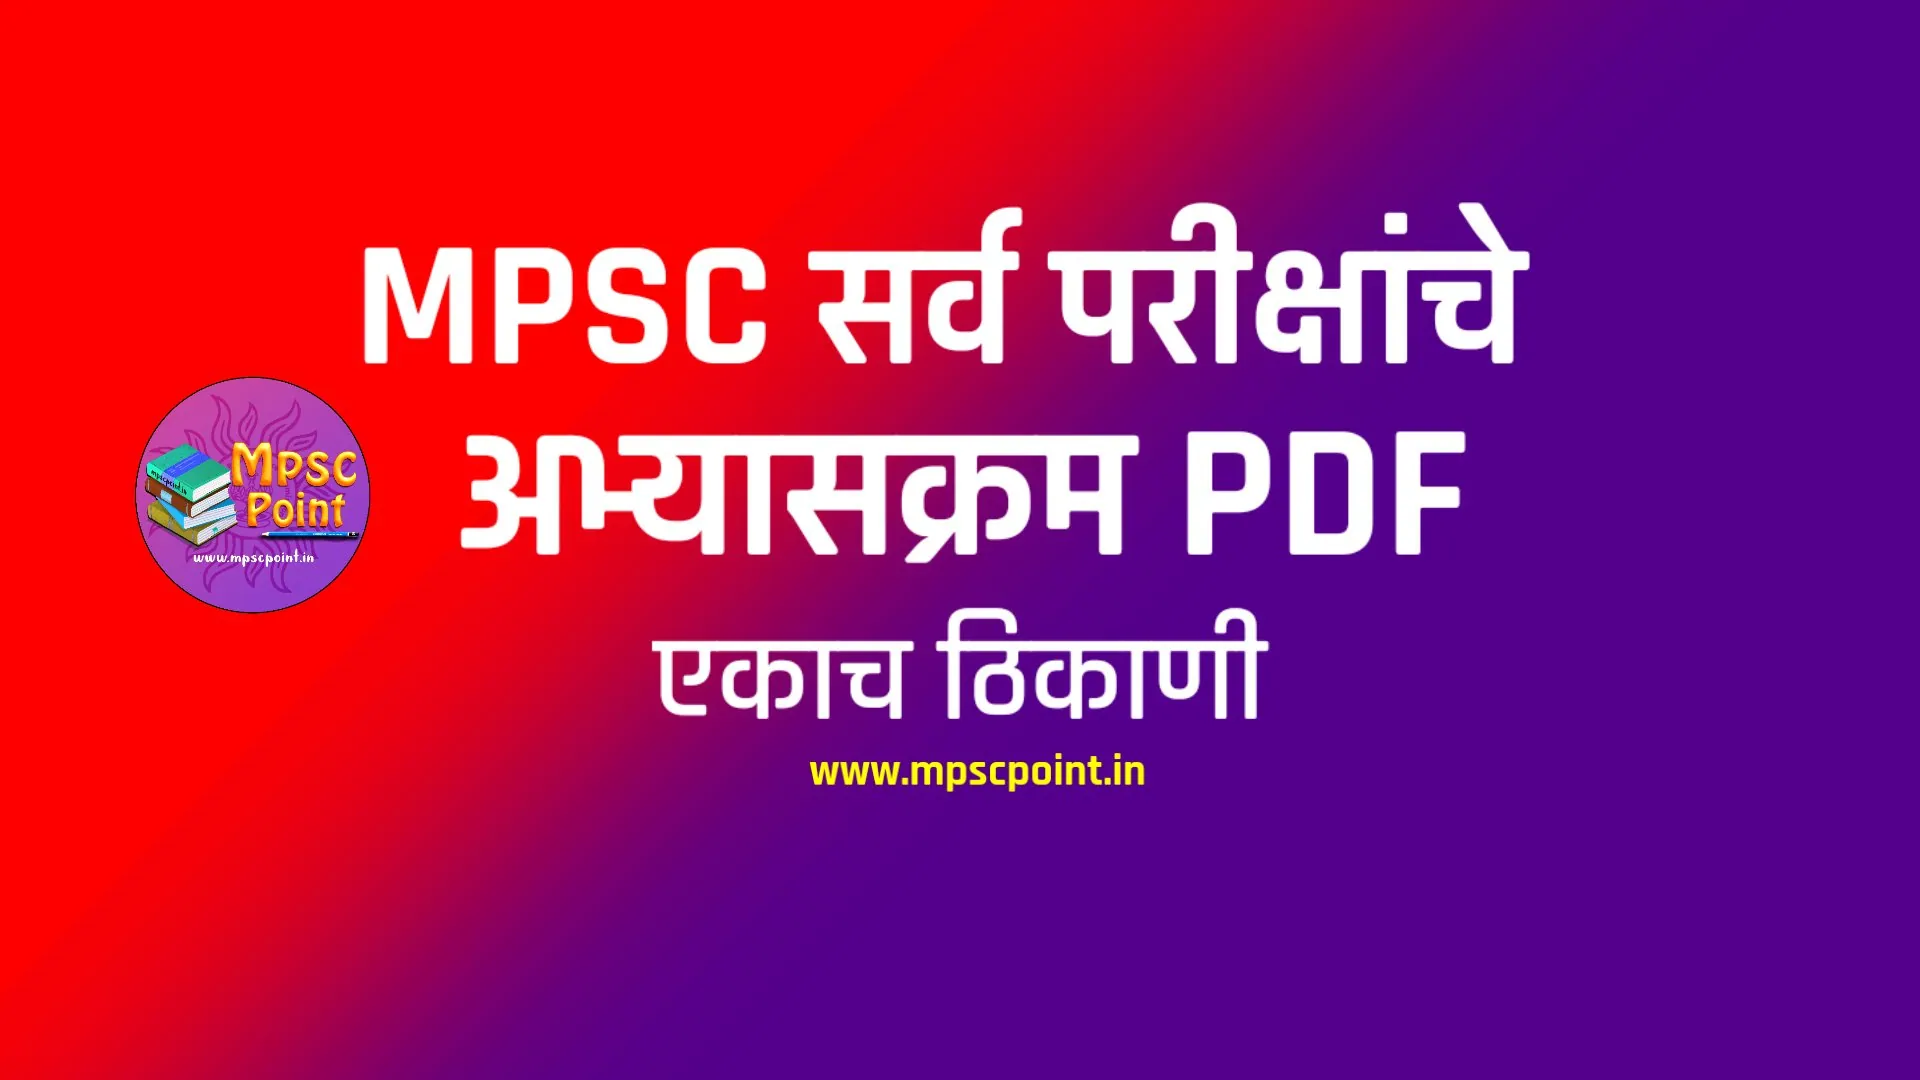 mpsc syllabus pdf